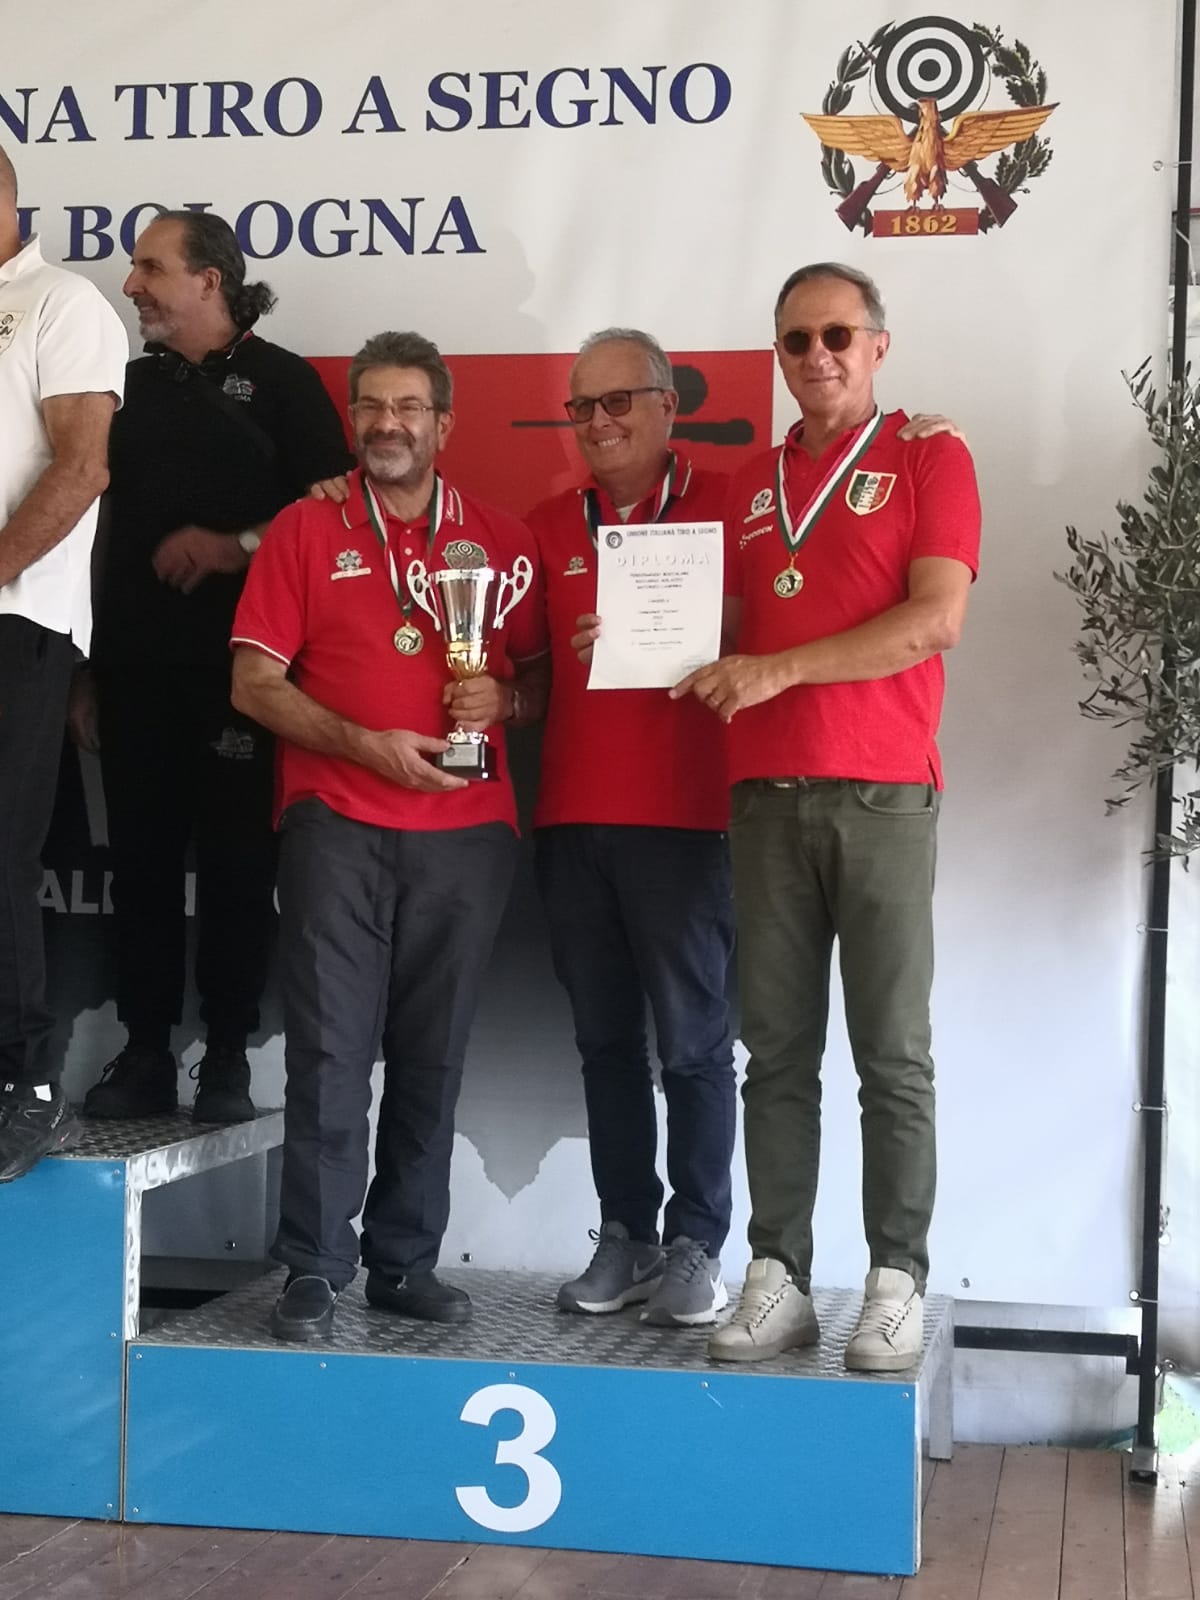 Finale Campionati Italiani di tiro a segno. Inizio in sordina per il Team di Candela.